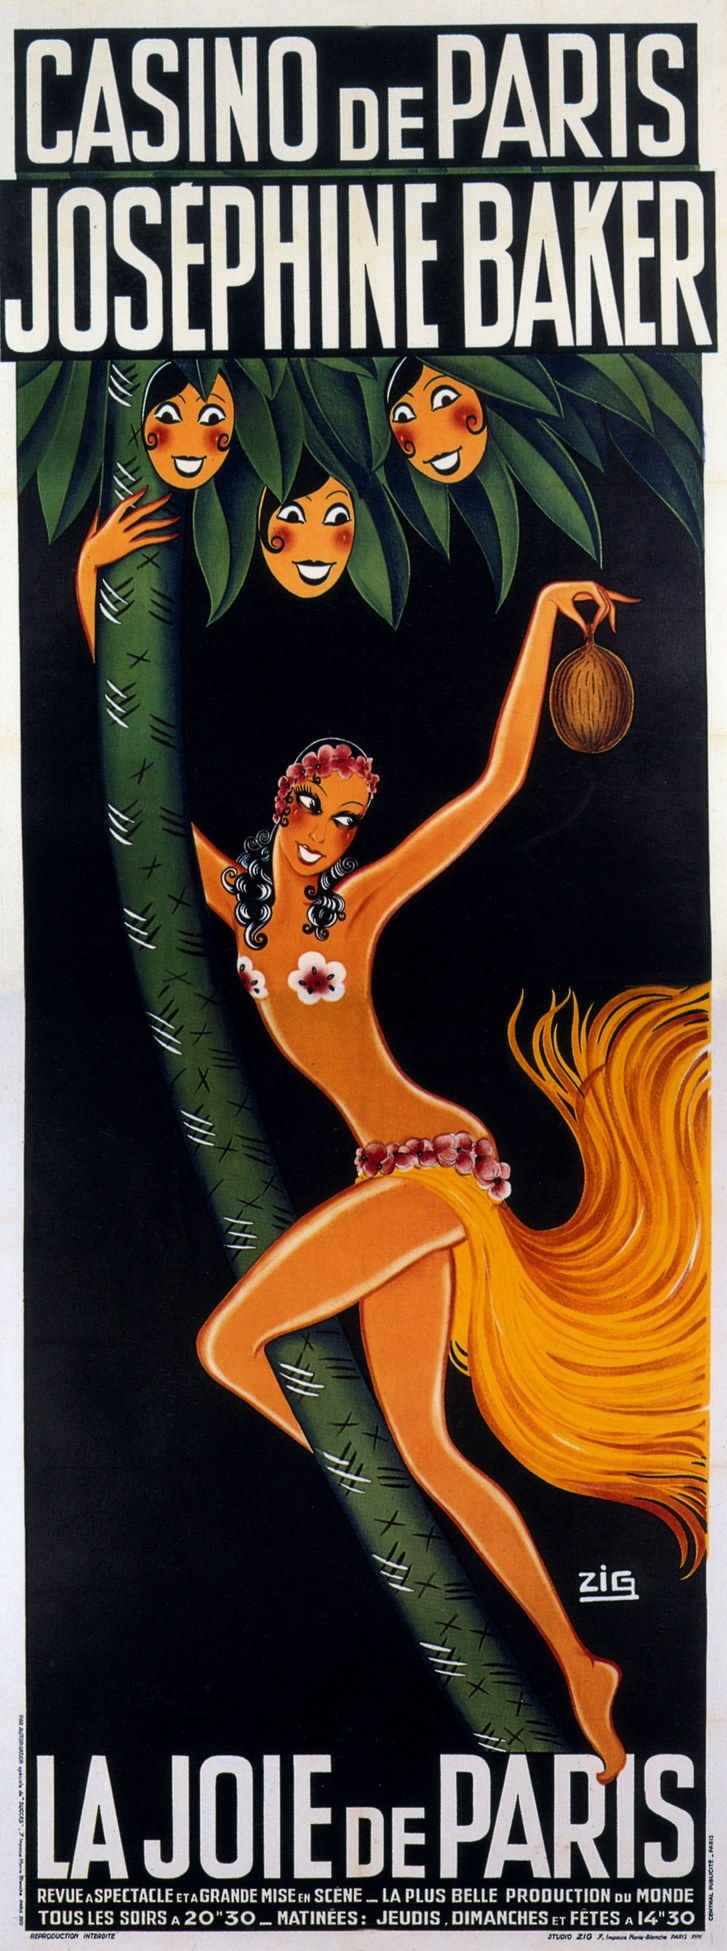 Poster by Zig for show La joie de Paris with Josephine Baker 1930